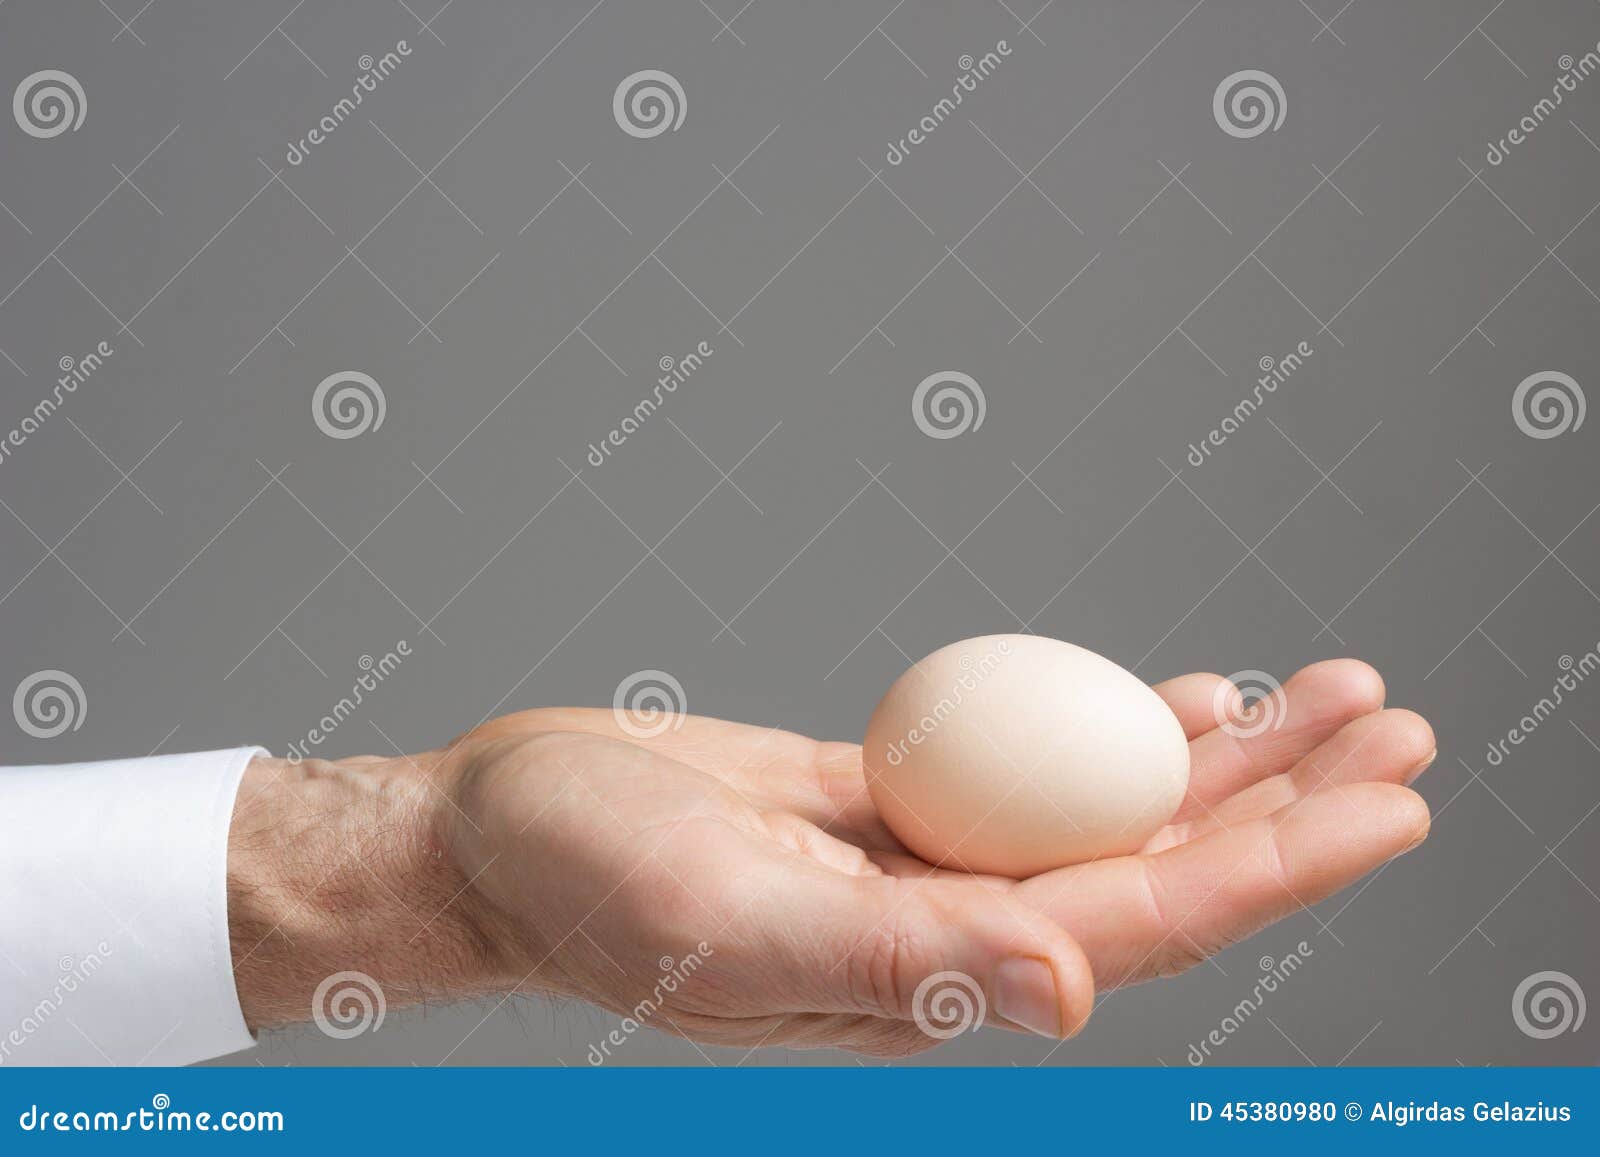 Почему одно яйцо ниже другого